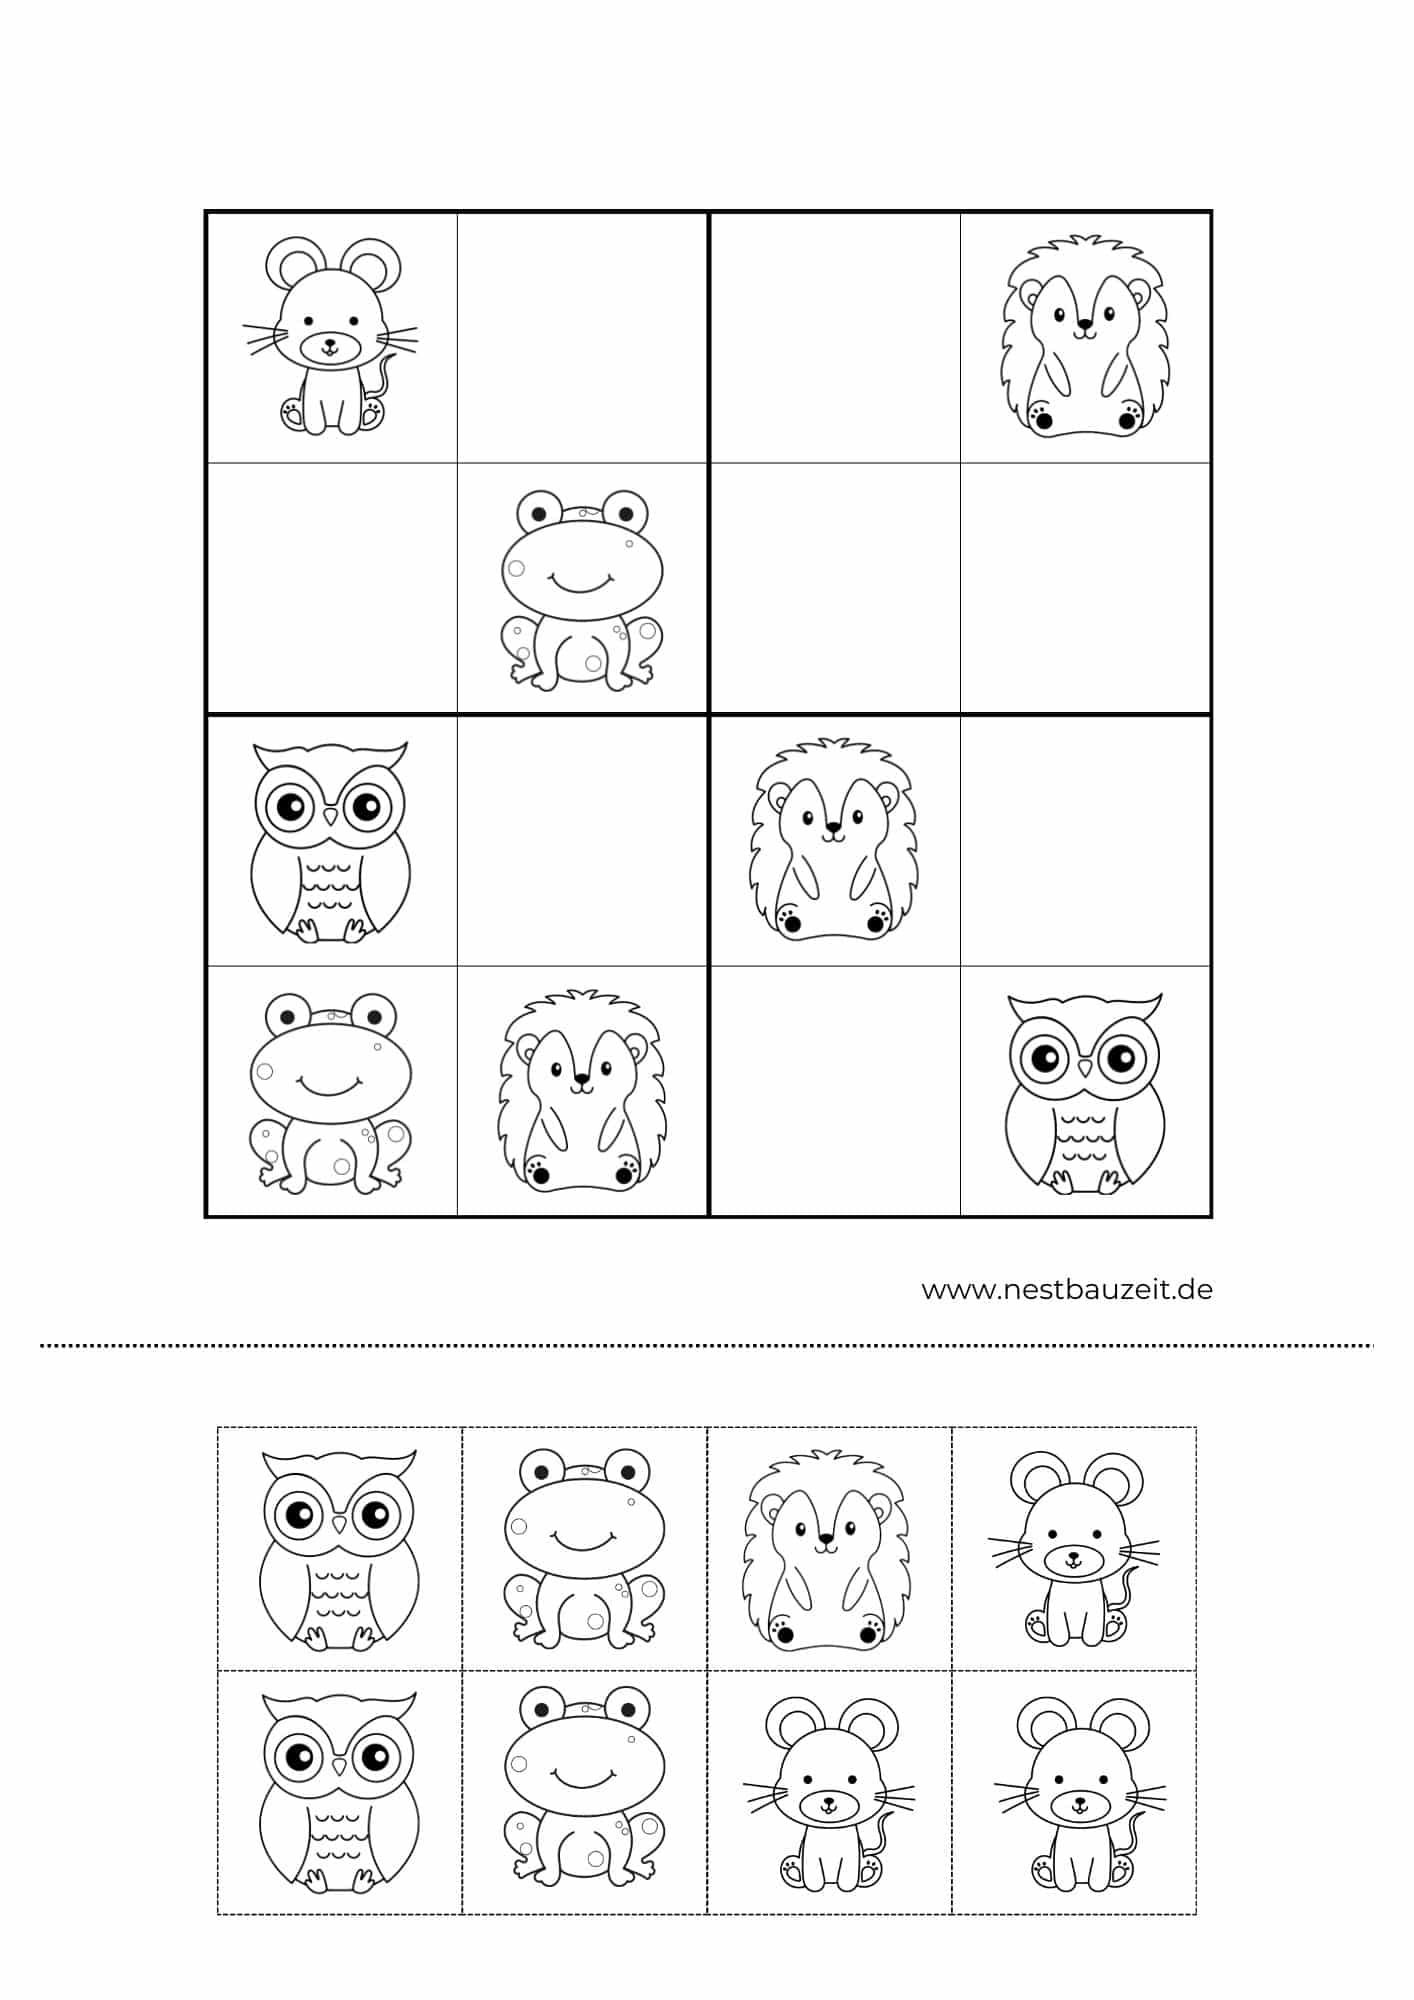 Druckvorlage Kinder-Sudoku mit Bildern zum Ausschneiden und Einkleben